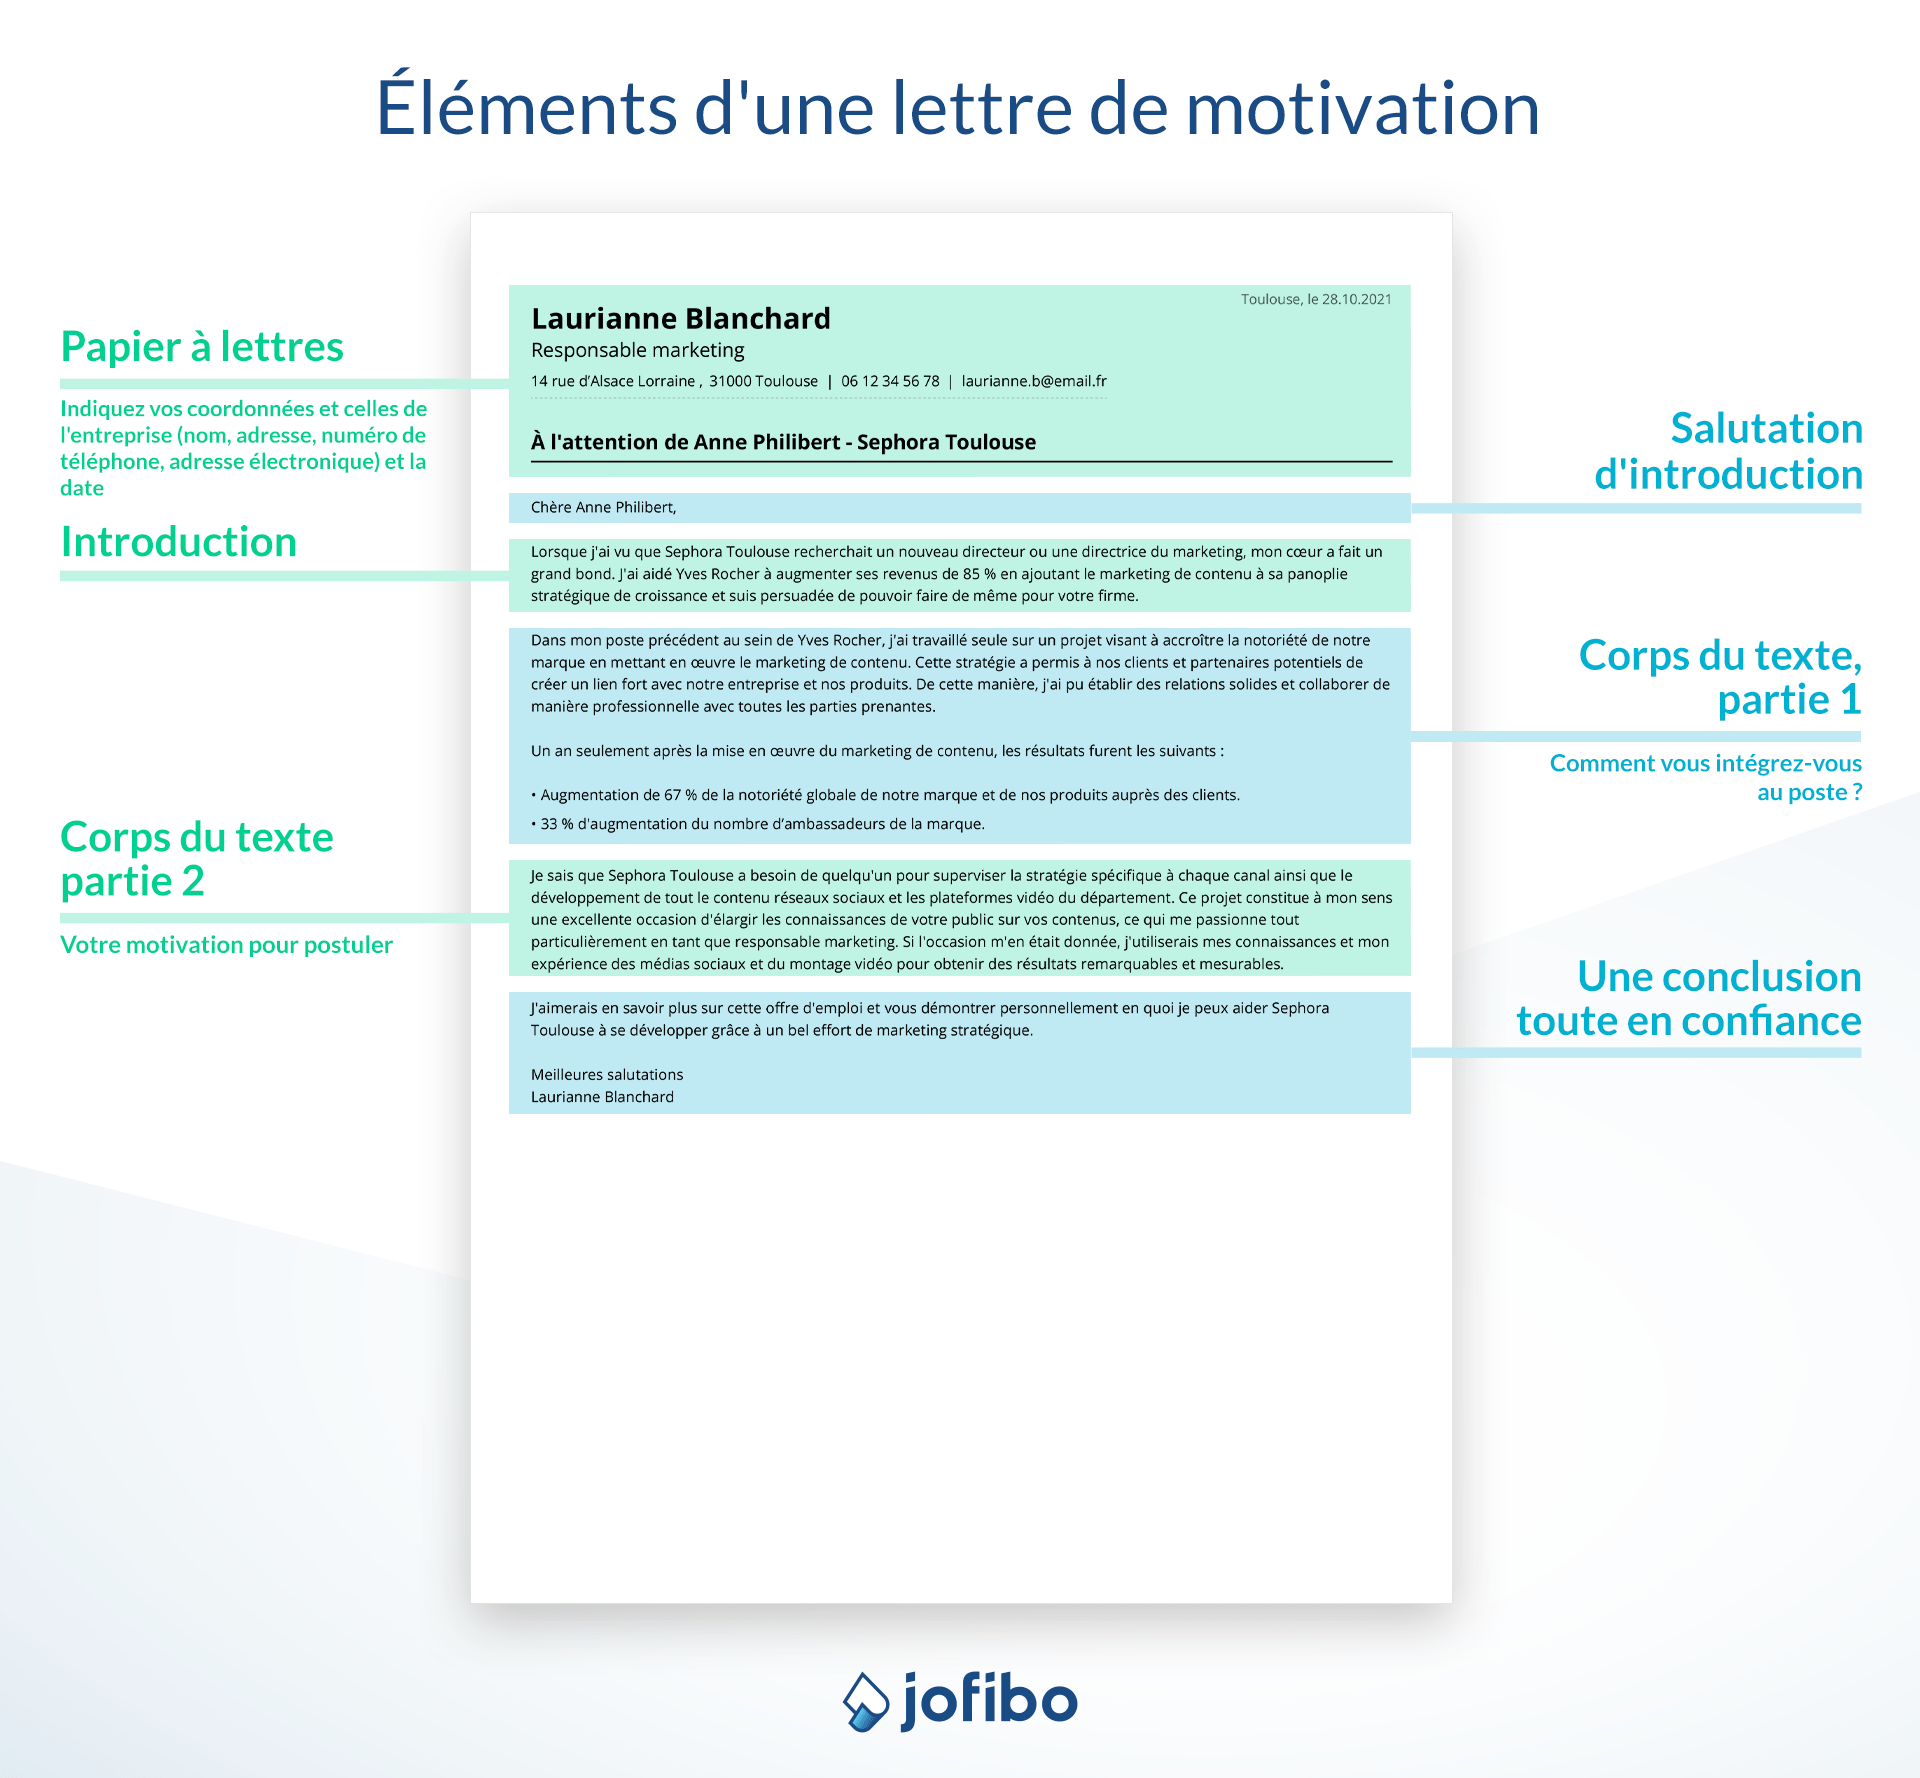 Exemple de elements de une lettre de motivation